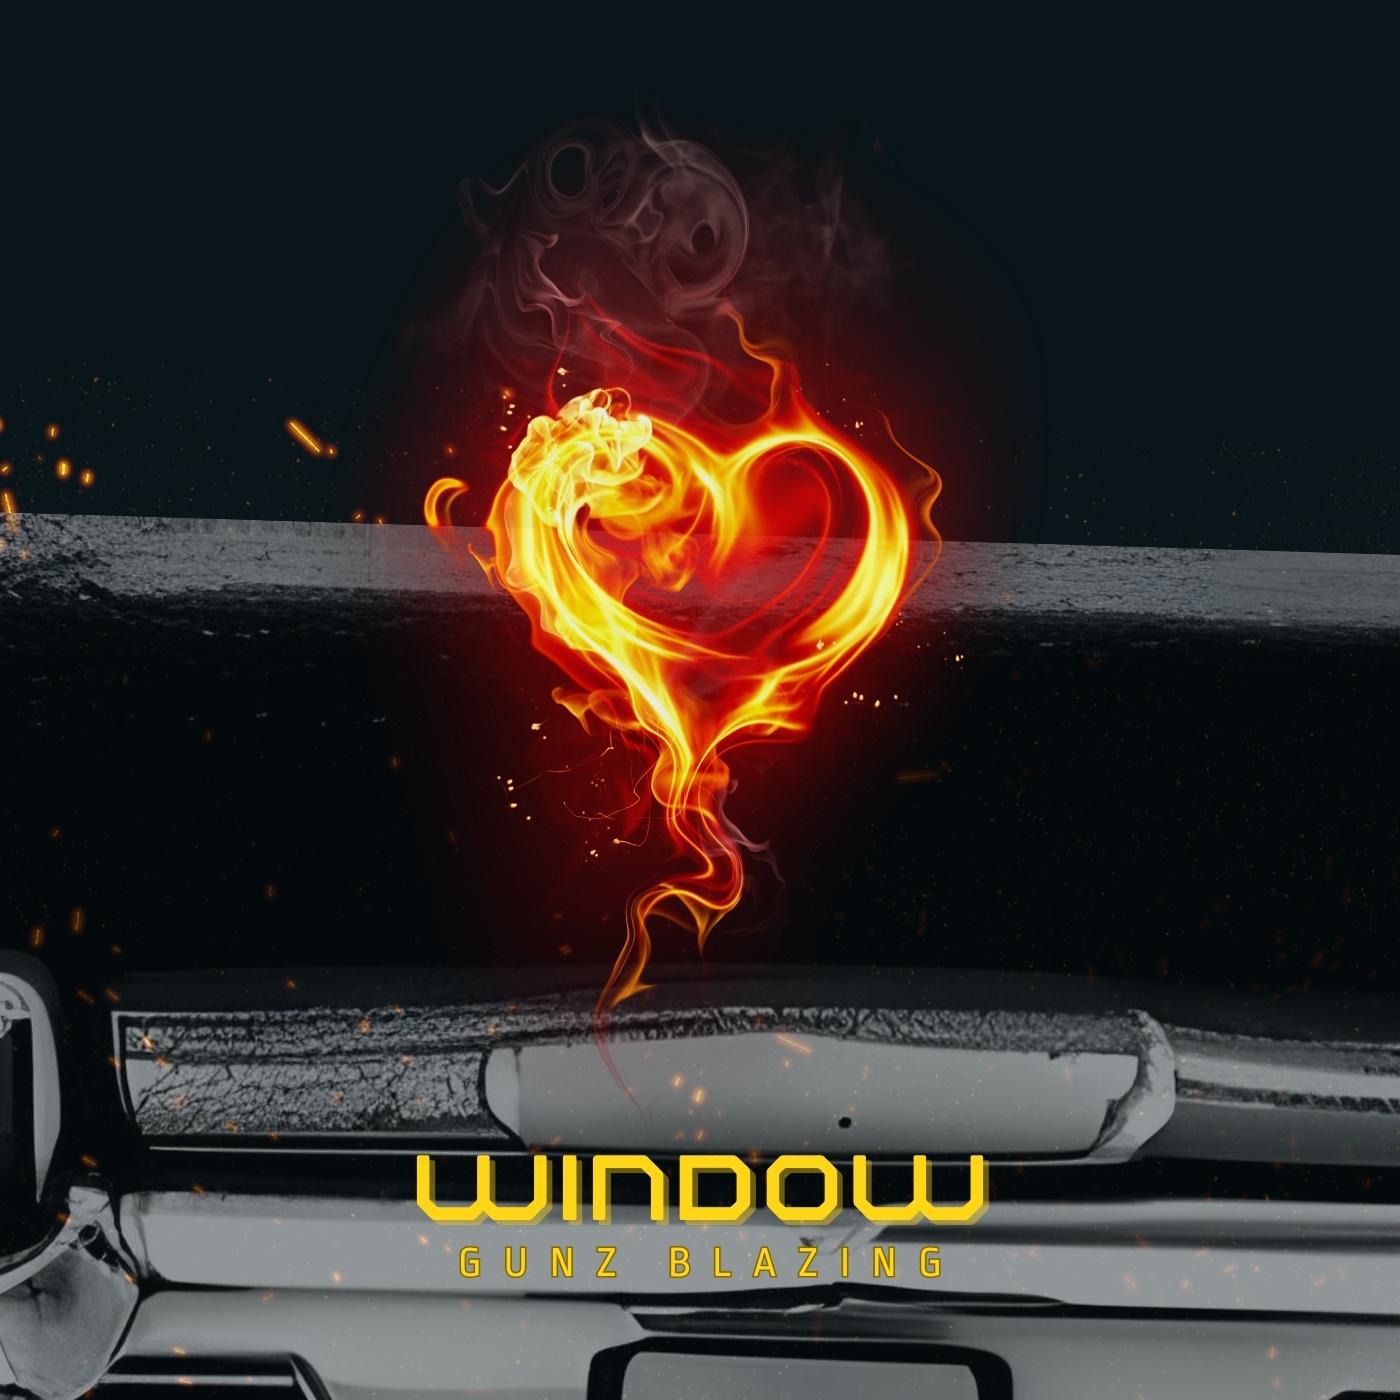 Постер альбома Window